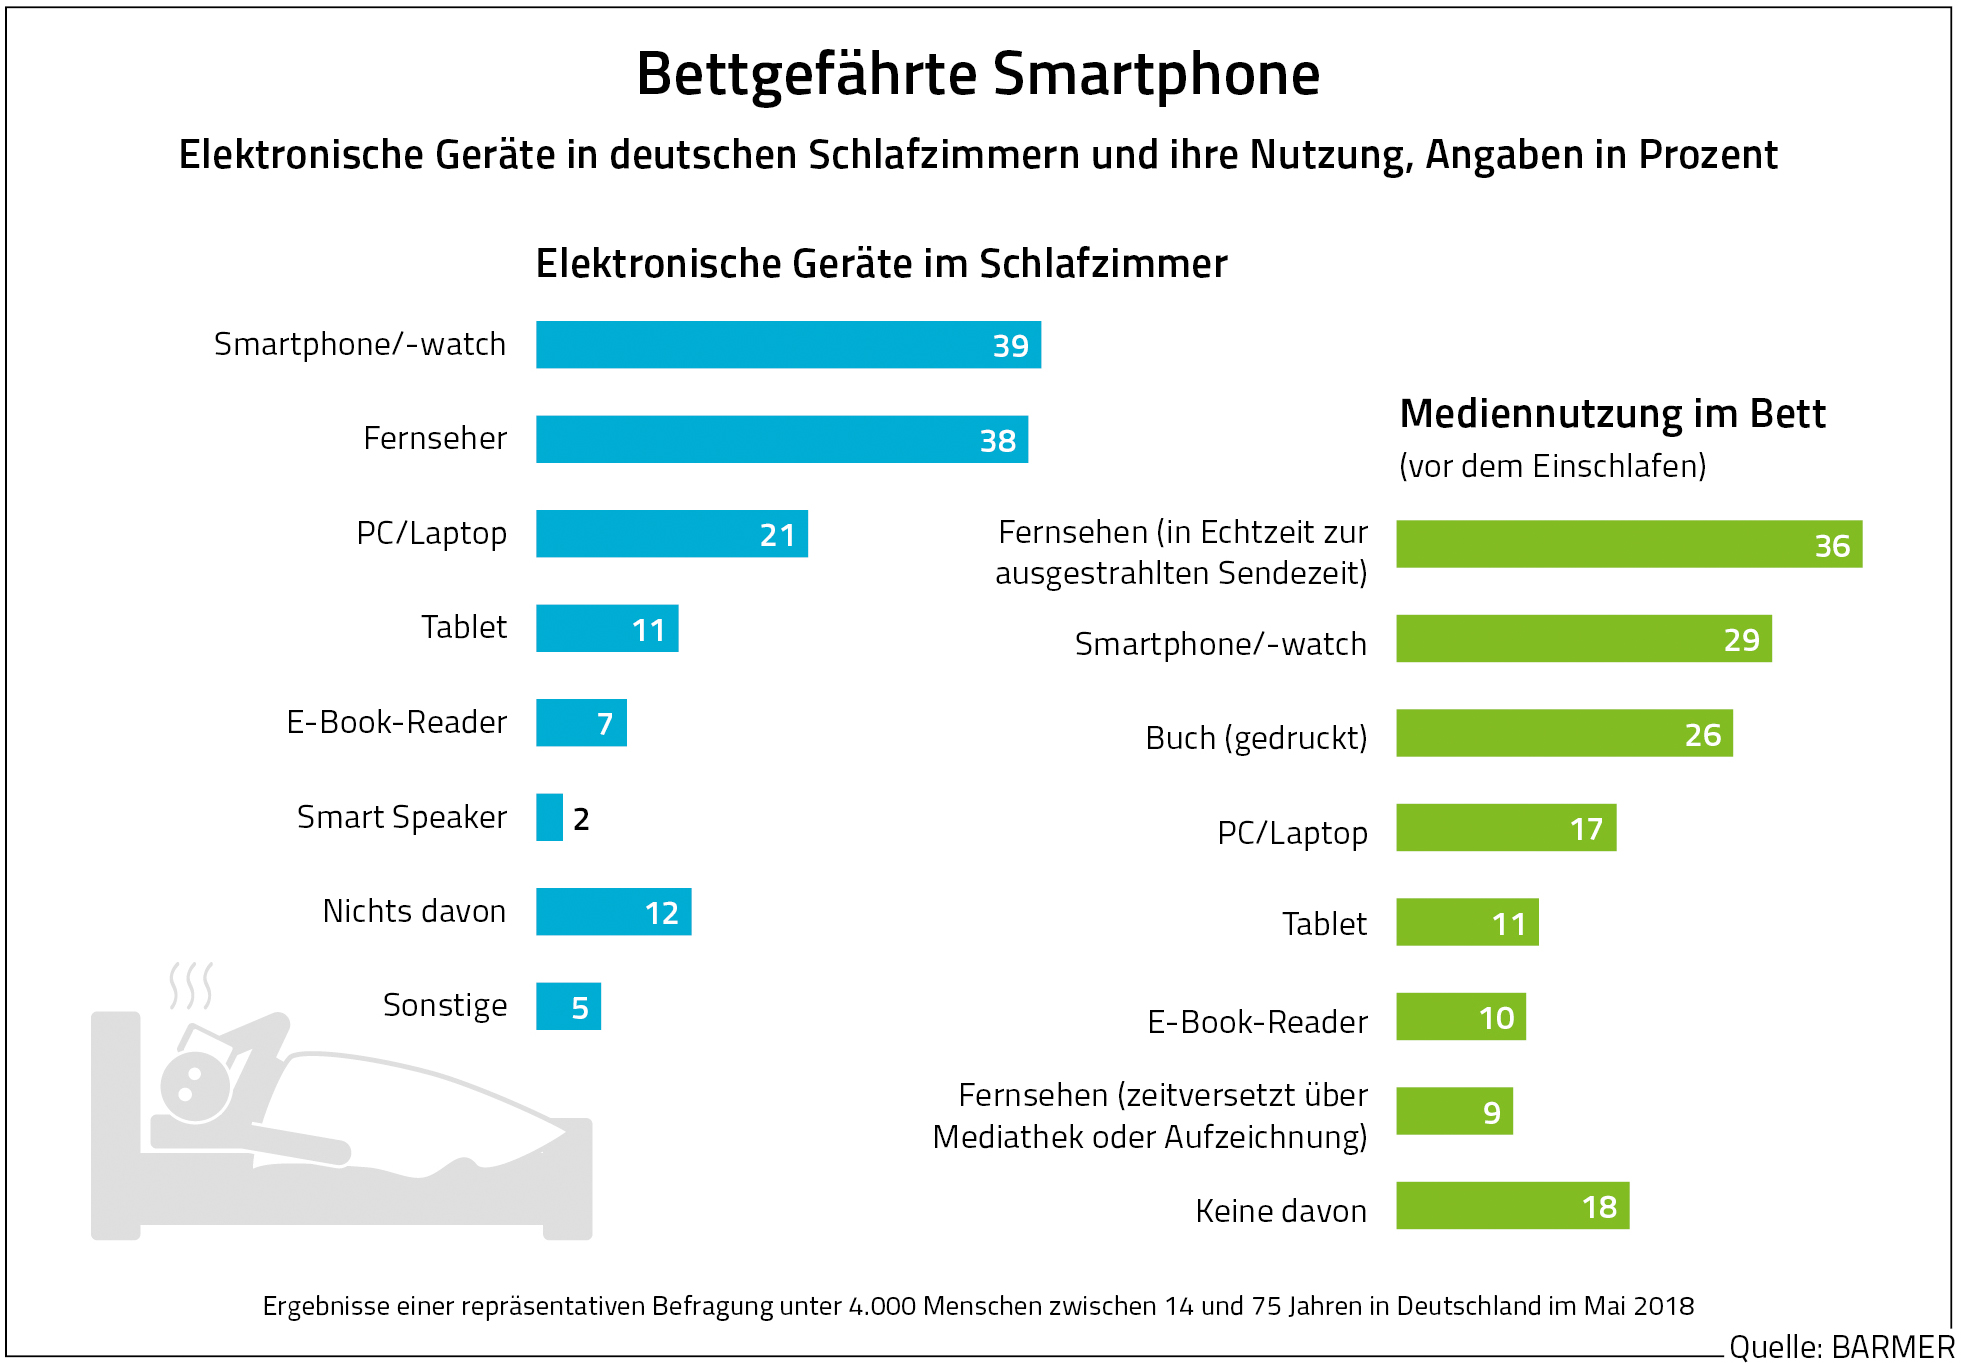 Grafik zeigt die Angaben Elektronische Geräte in deutschen Schlafzimmern und ihre Nutzung, Angaben in Prozent